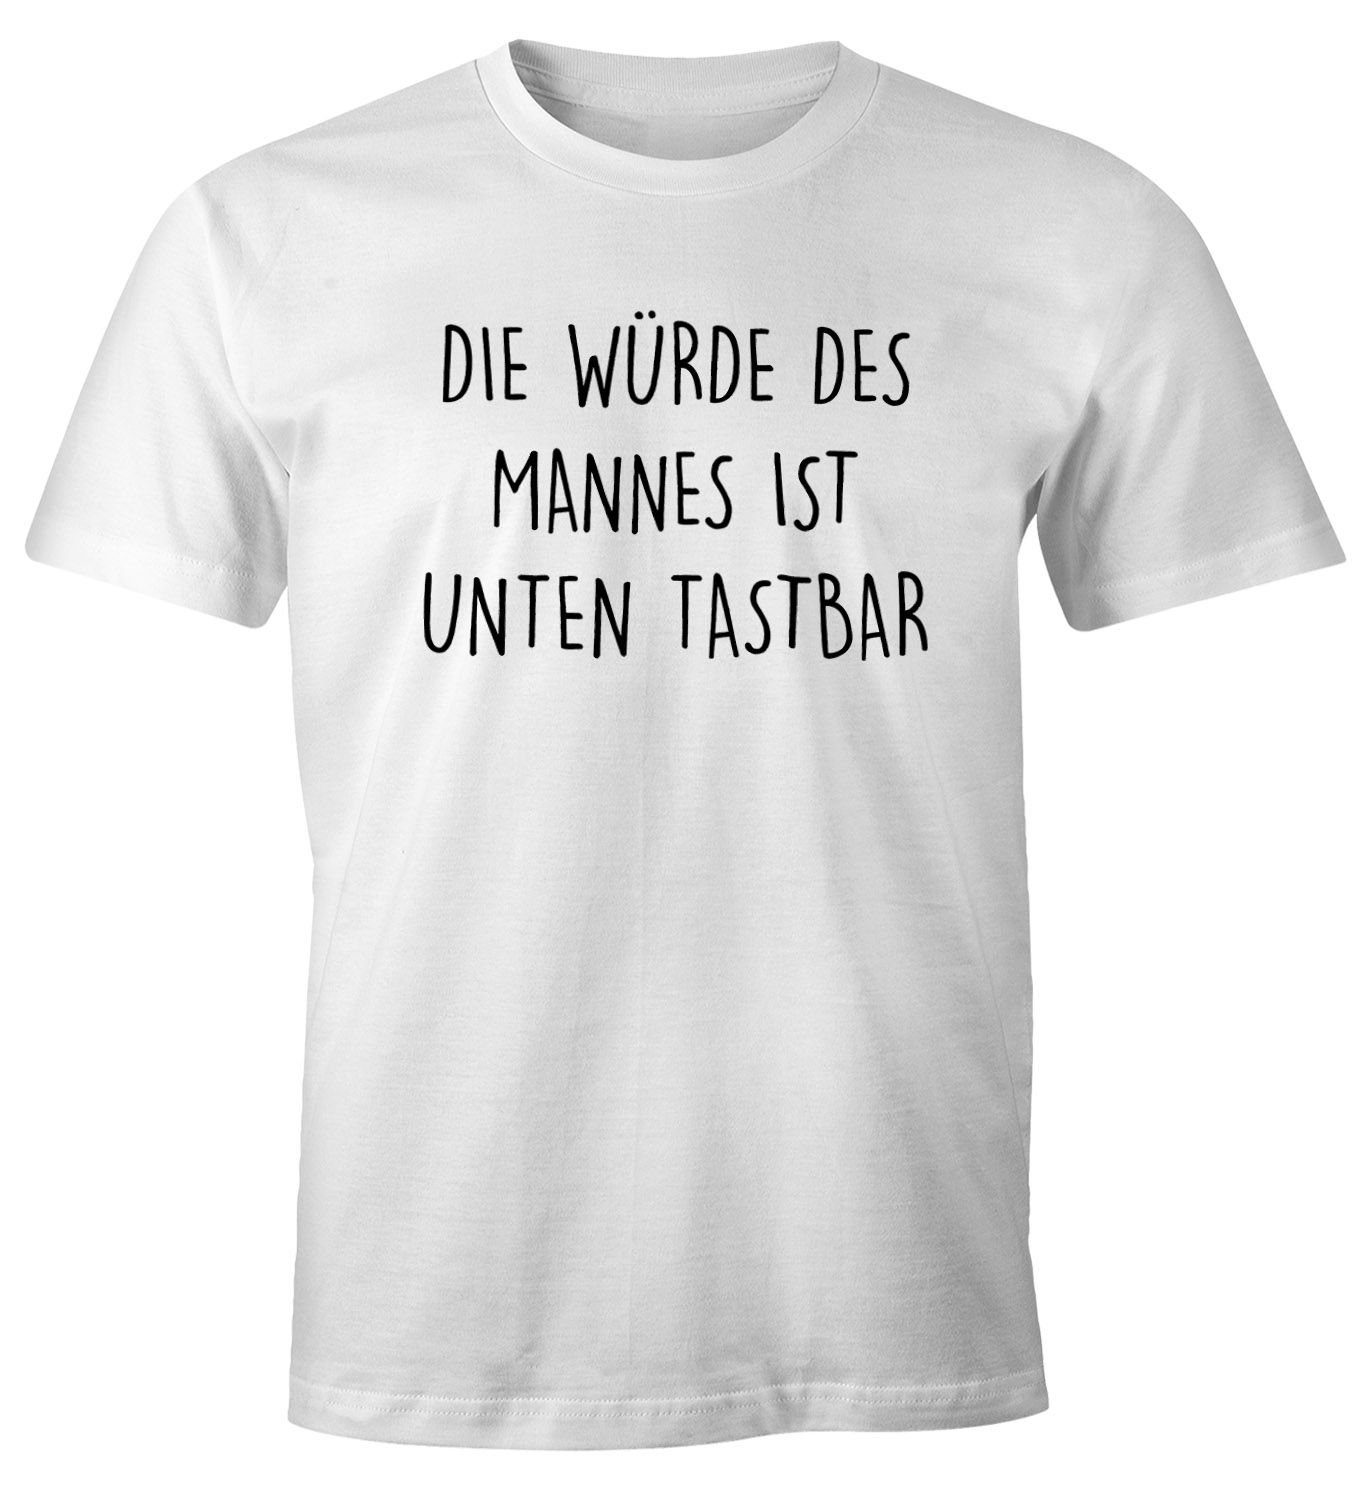 MoonWorks Print-Shirt Lustiges Herren T-Shirt mit Spruch Die Würde des Mannes ist unten tastbar Fun-Shirt Moonworks® mit Print weiß